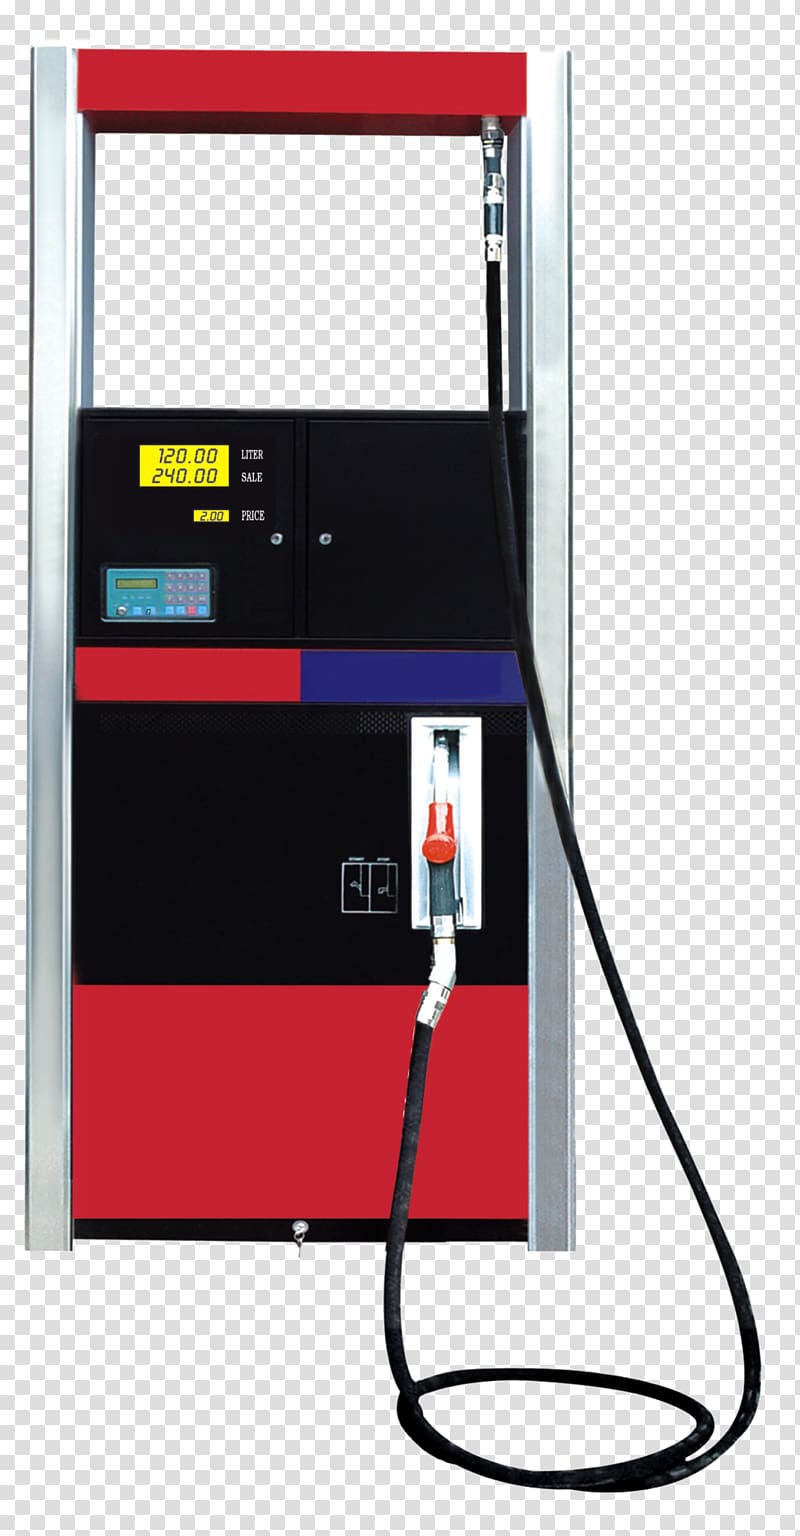 petrol pump machine clipart